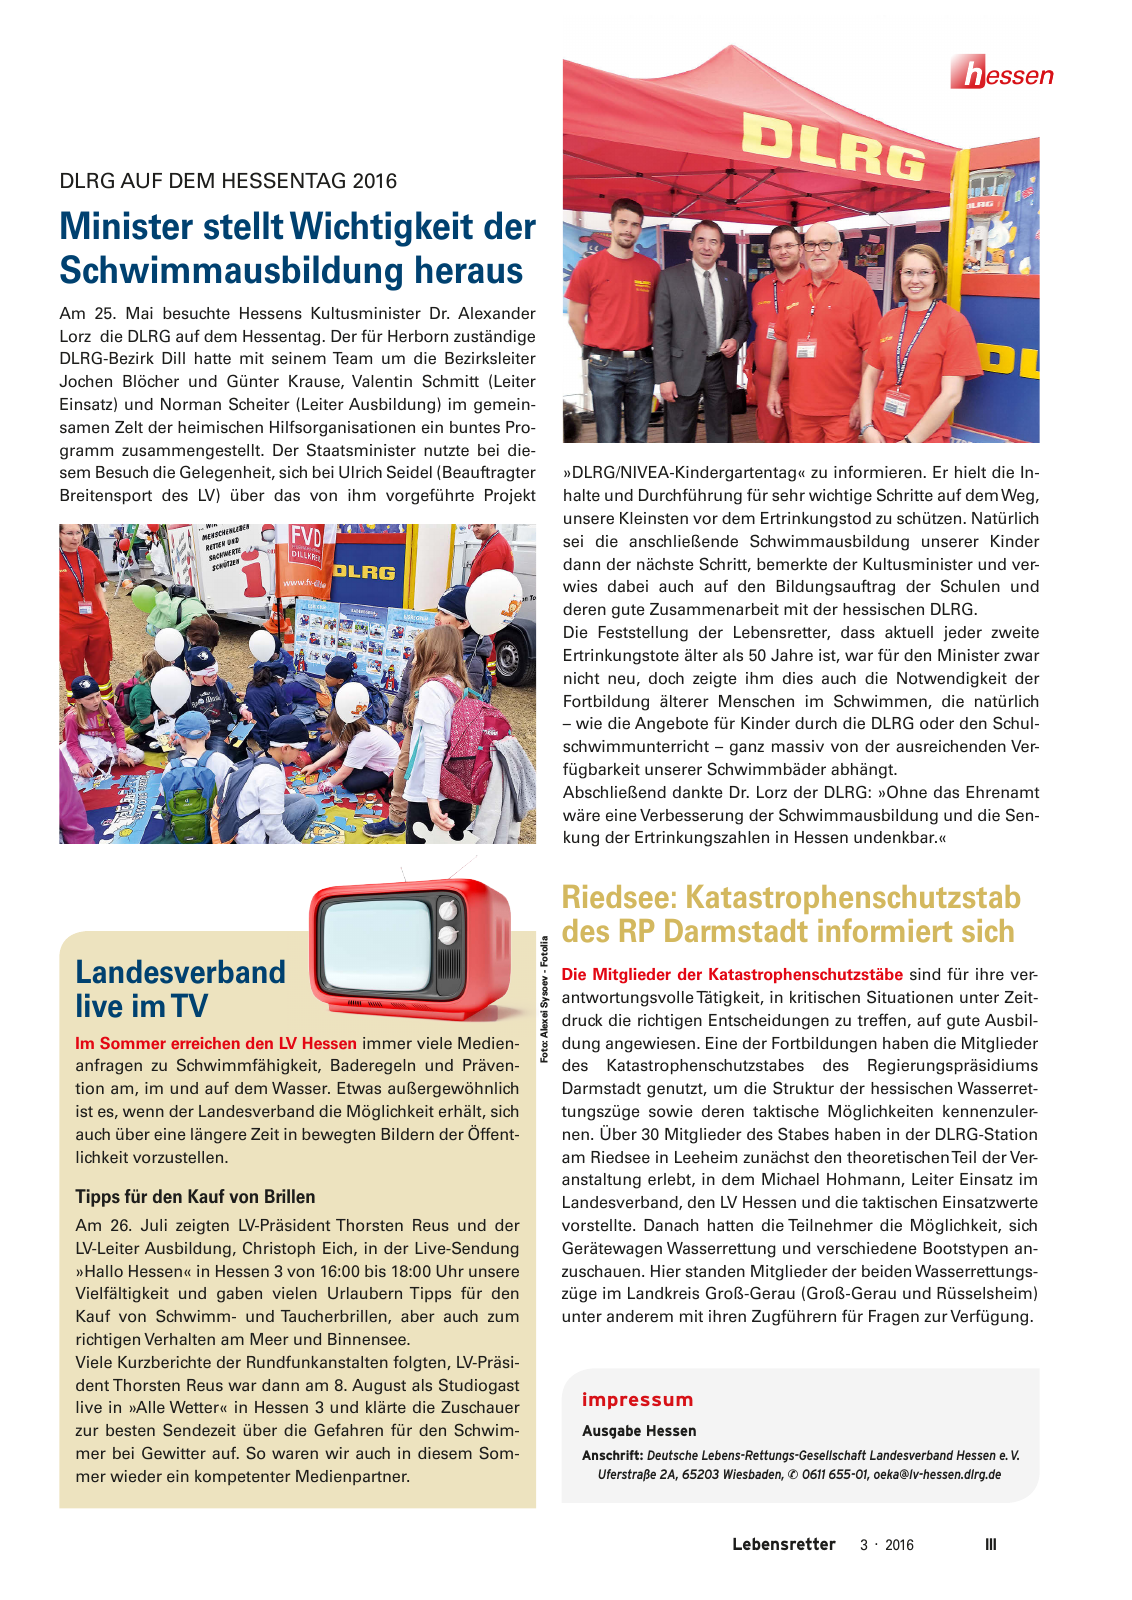 Vorschau Lebensretter 3/2016 - Regionalausgabe Hessen Seite 5